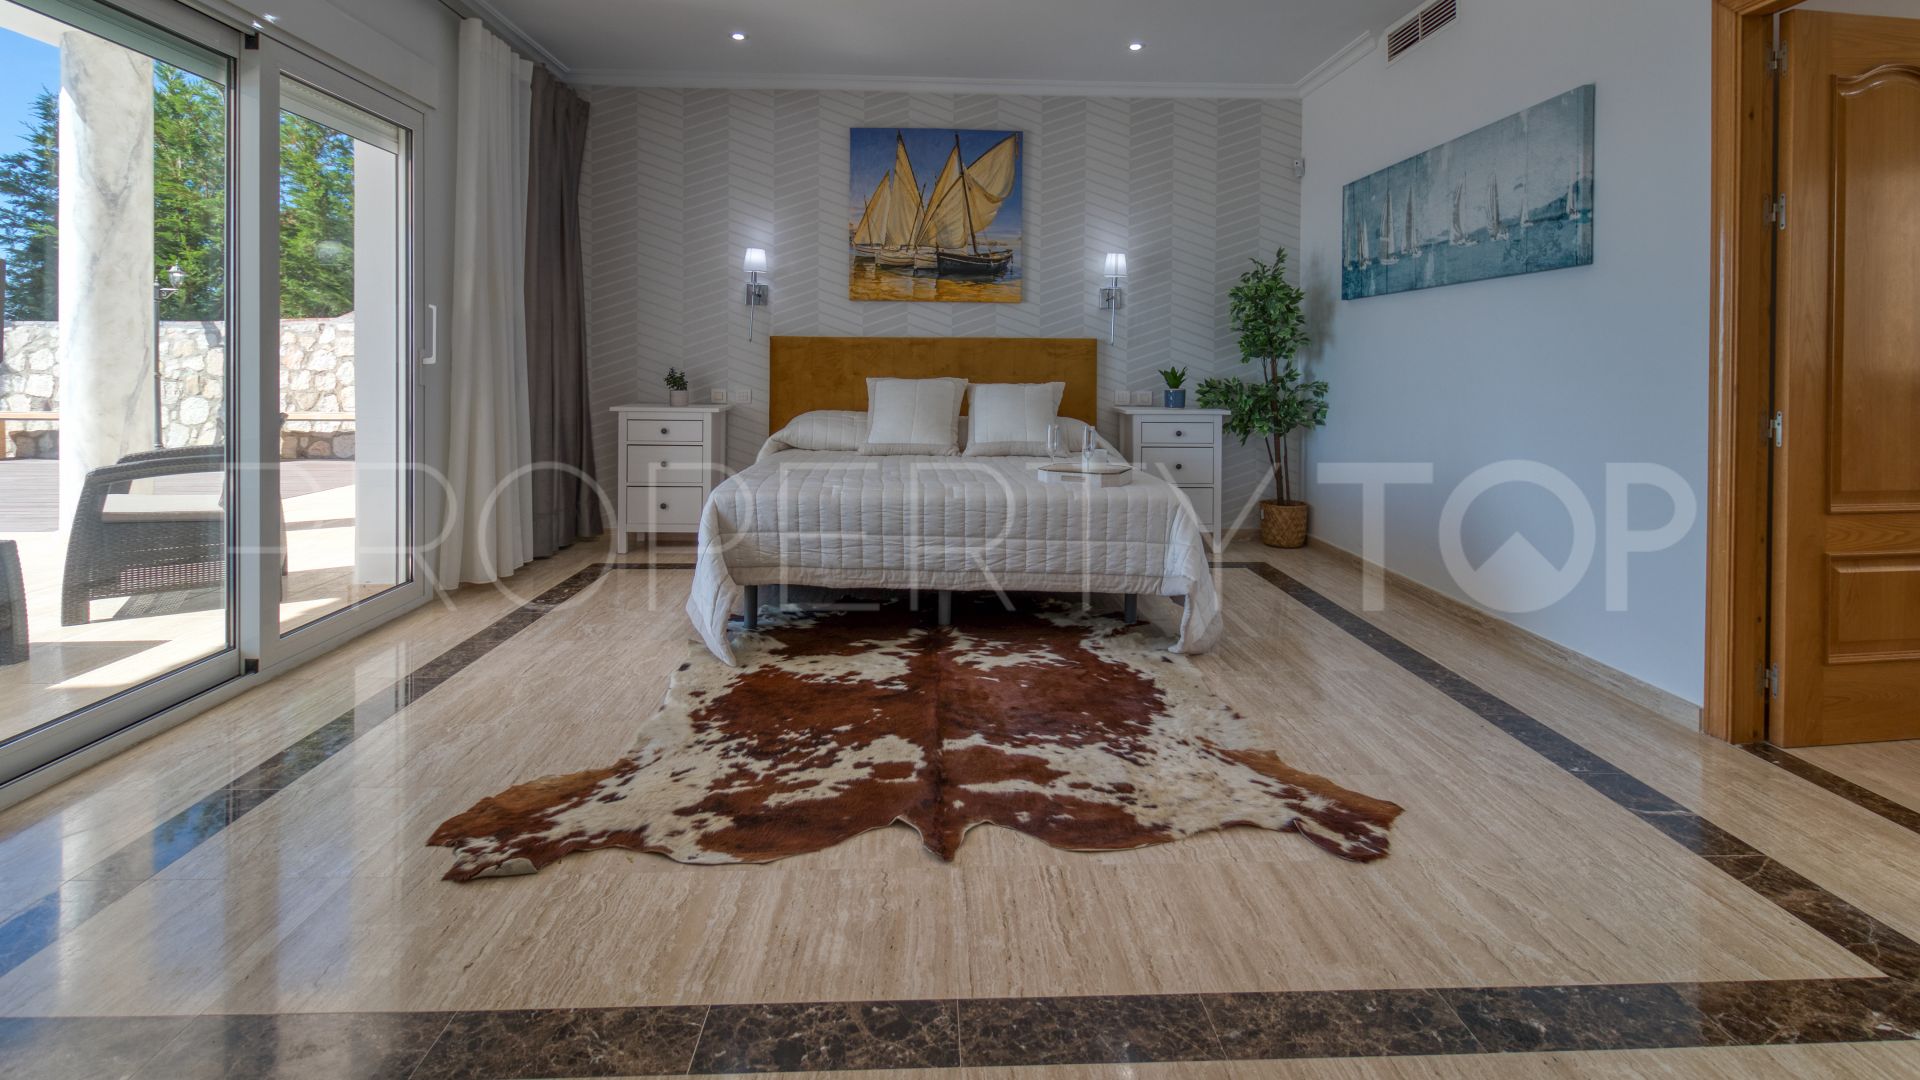 For sale Valtocado villa with 7 bedrooms